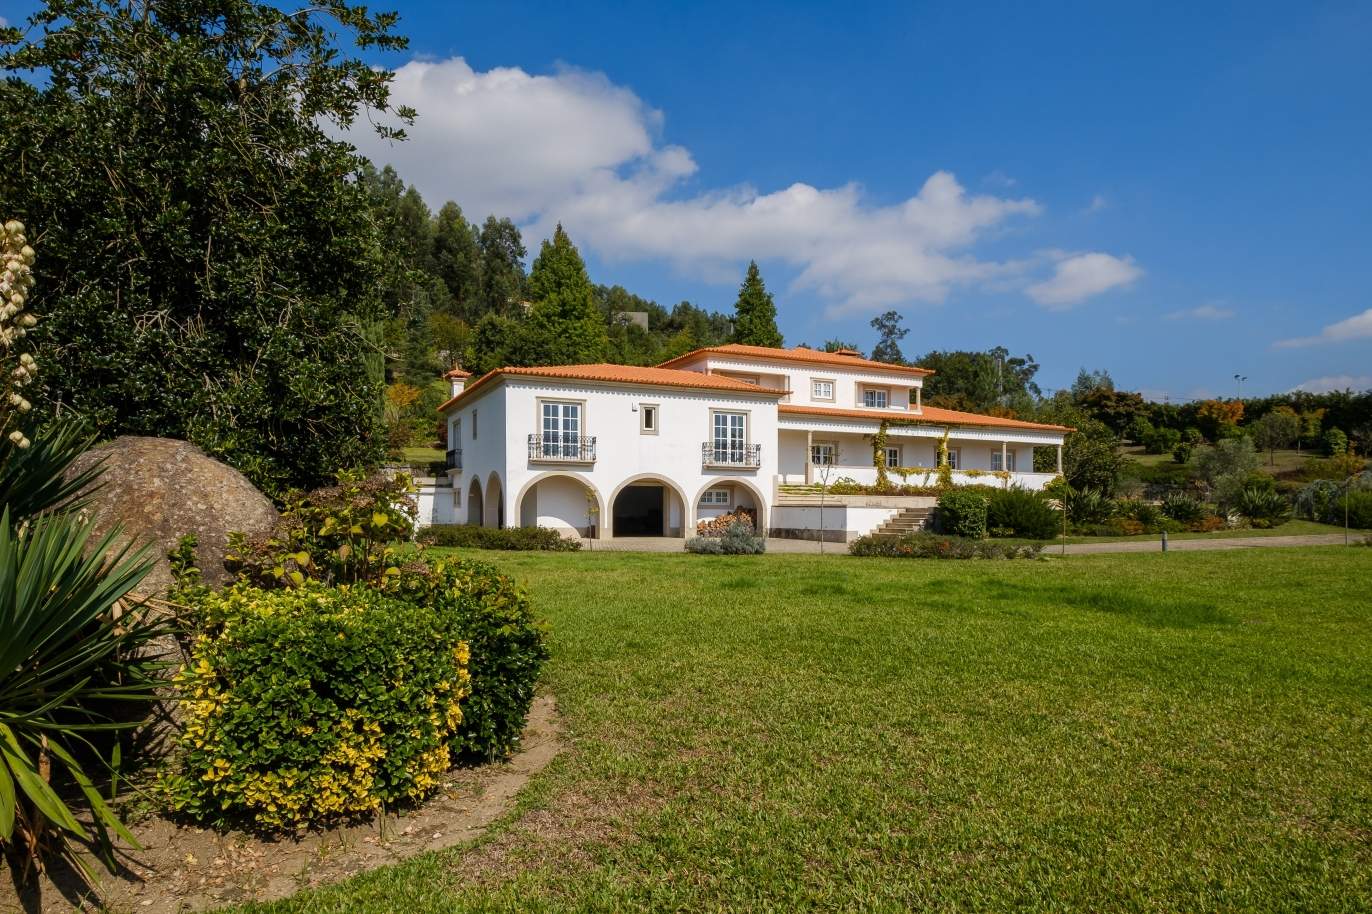 Casa típica portuguesa com jardim e piscina, para venda, em Guimarães_153290